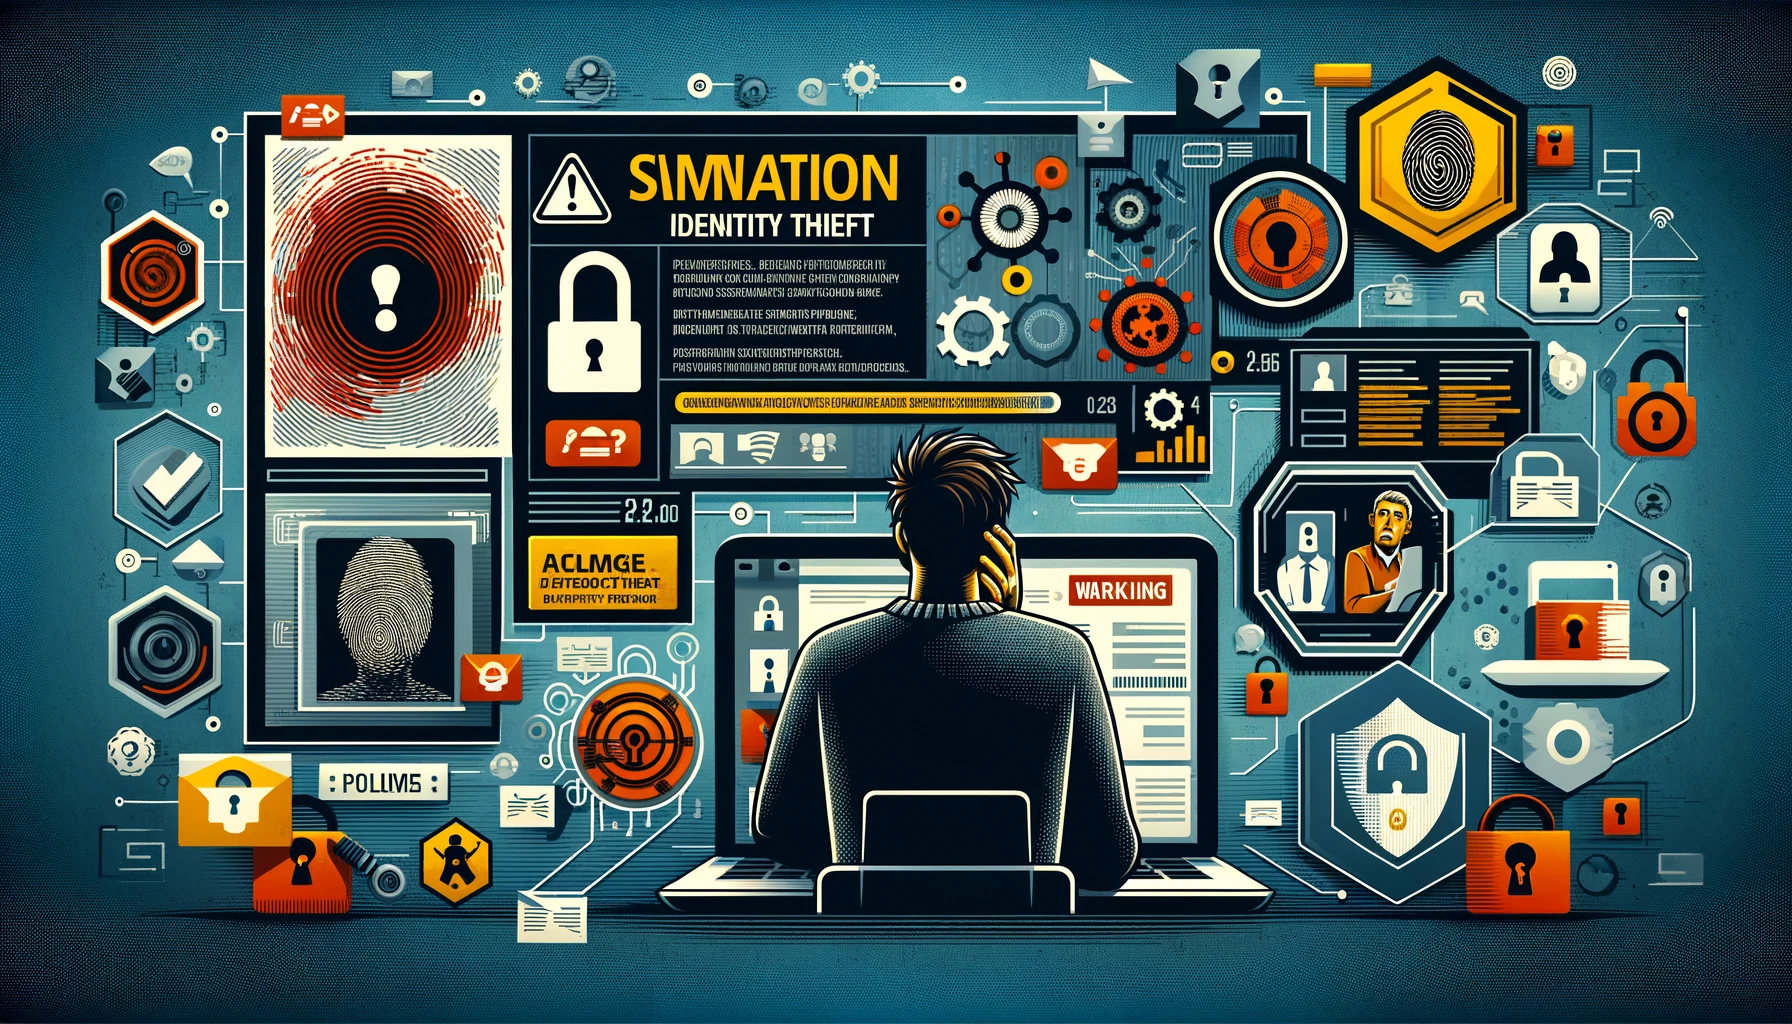 Banner sobre prevención de robo de identidad, mostrando un usuario preocupado, pantalla de PC con alerta de seguridad, perfiles digitales comprometidos y símbolos de ciberseguridad como candados.